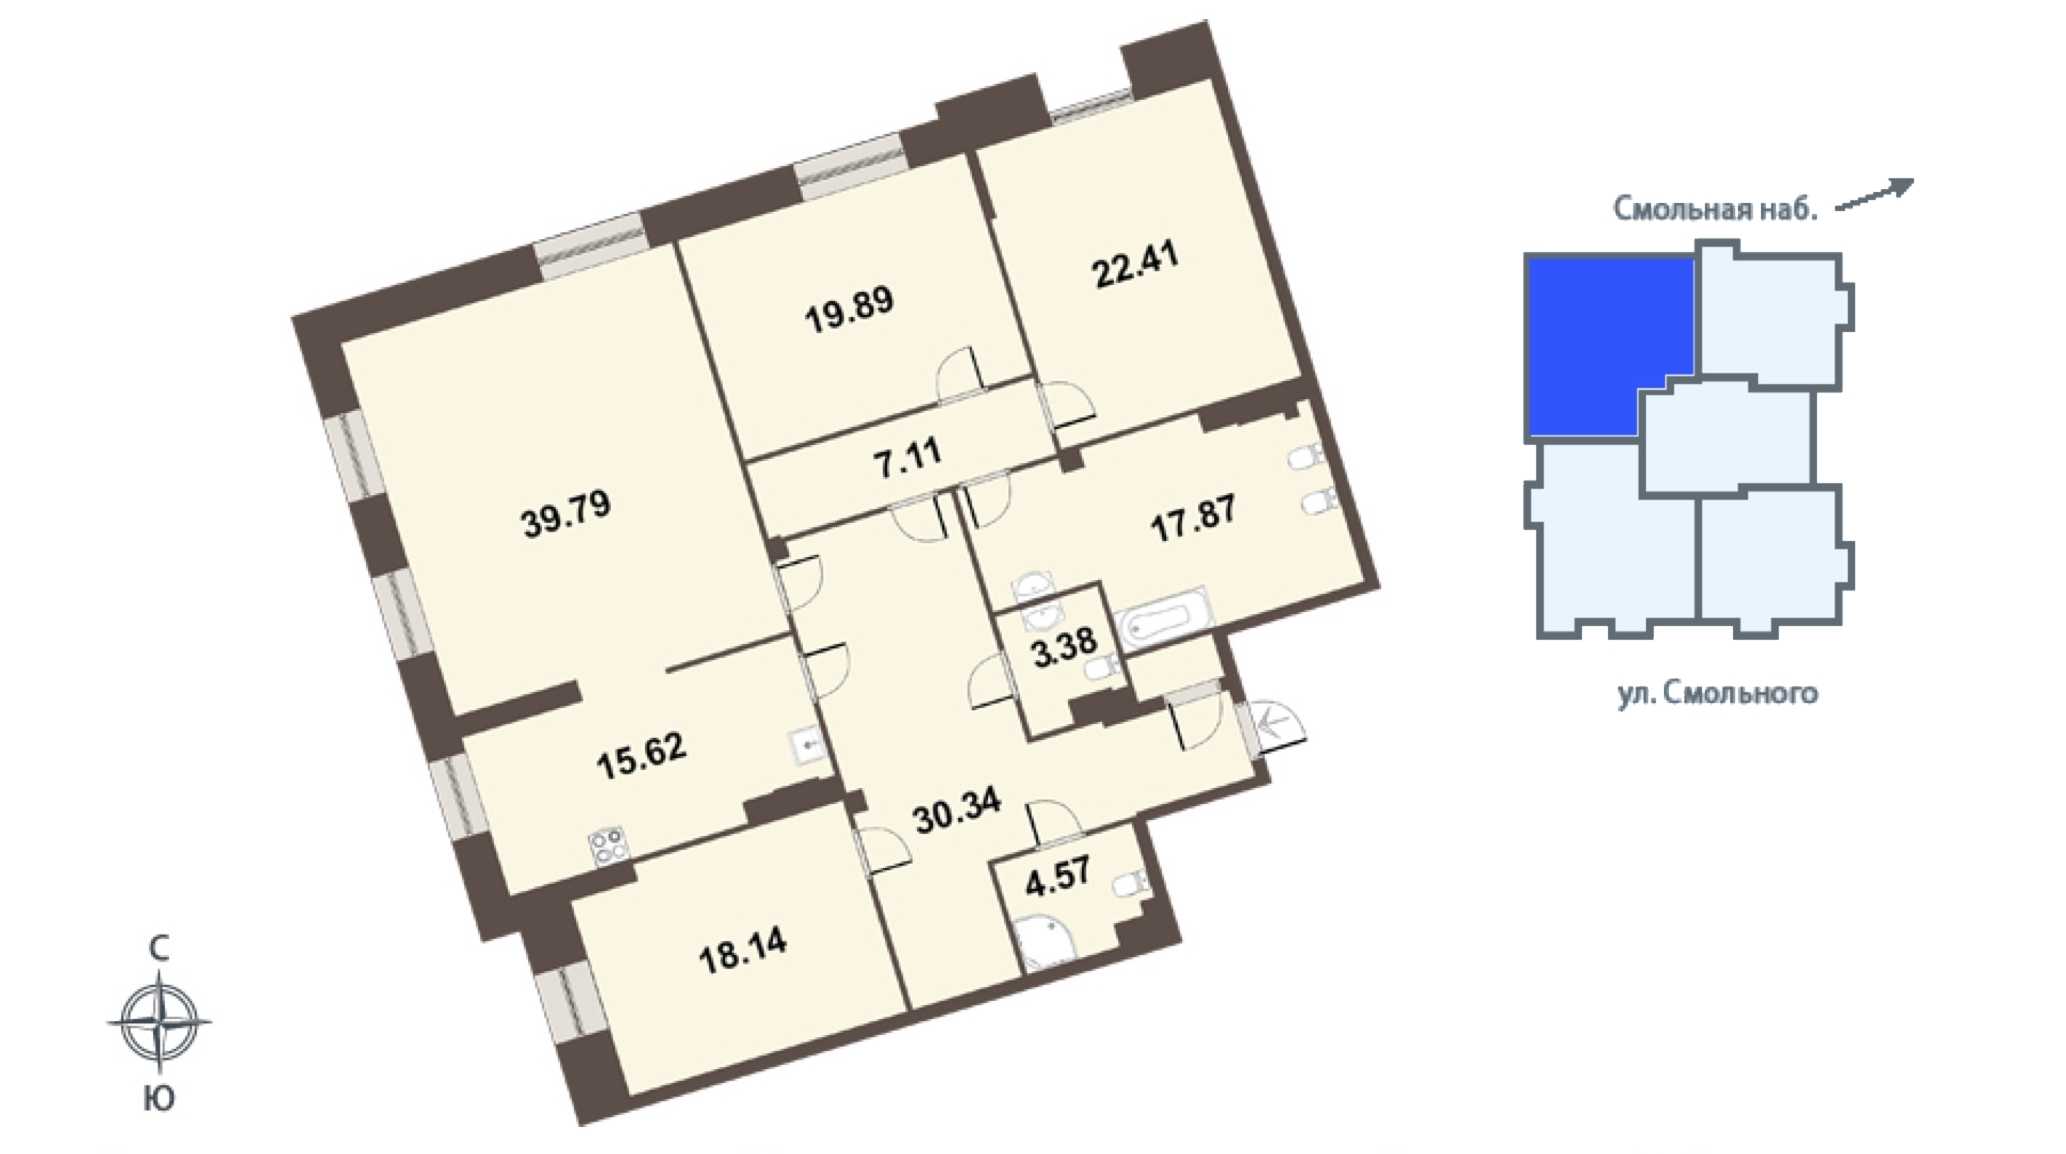 Четырехкомнатная квартира в Группа ЛСР: площадь 181 м2 , этаж: 4 – купить в Санкт-Петербурге